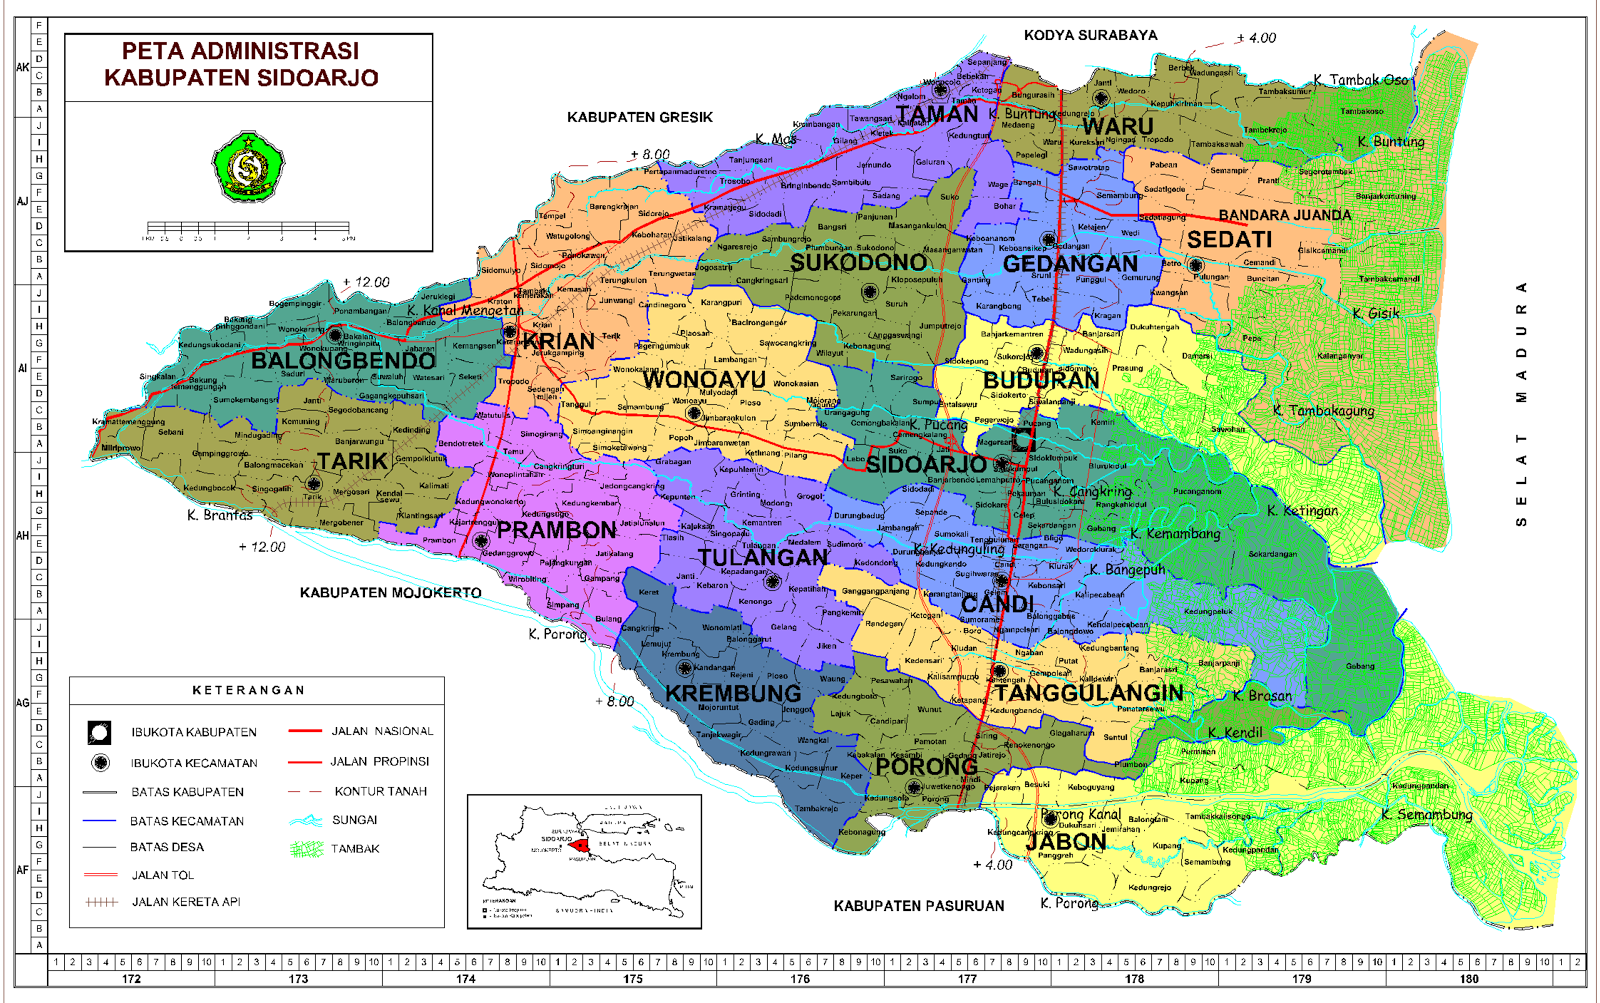  Sidoarjo  Map  Peta Kabupaten Sidoarjo  